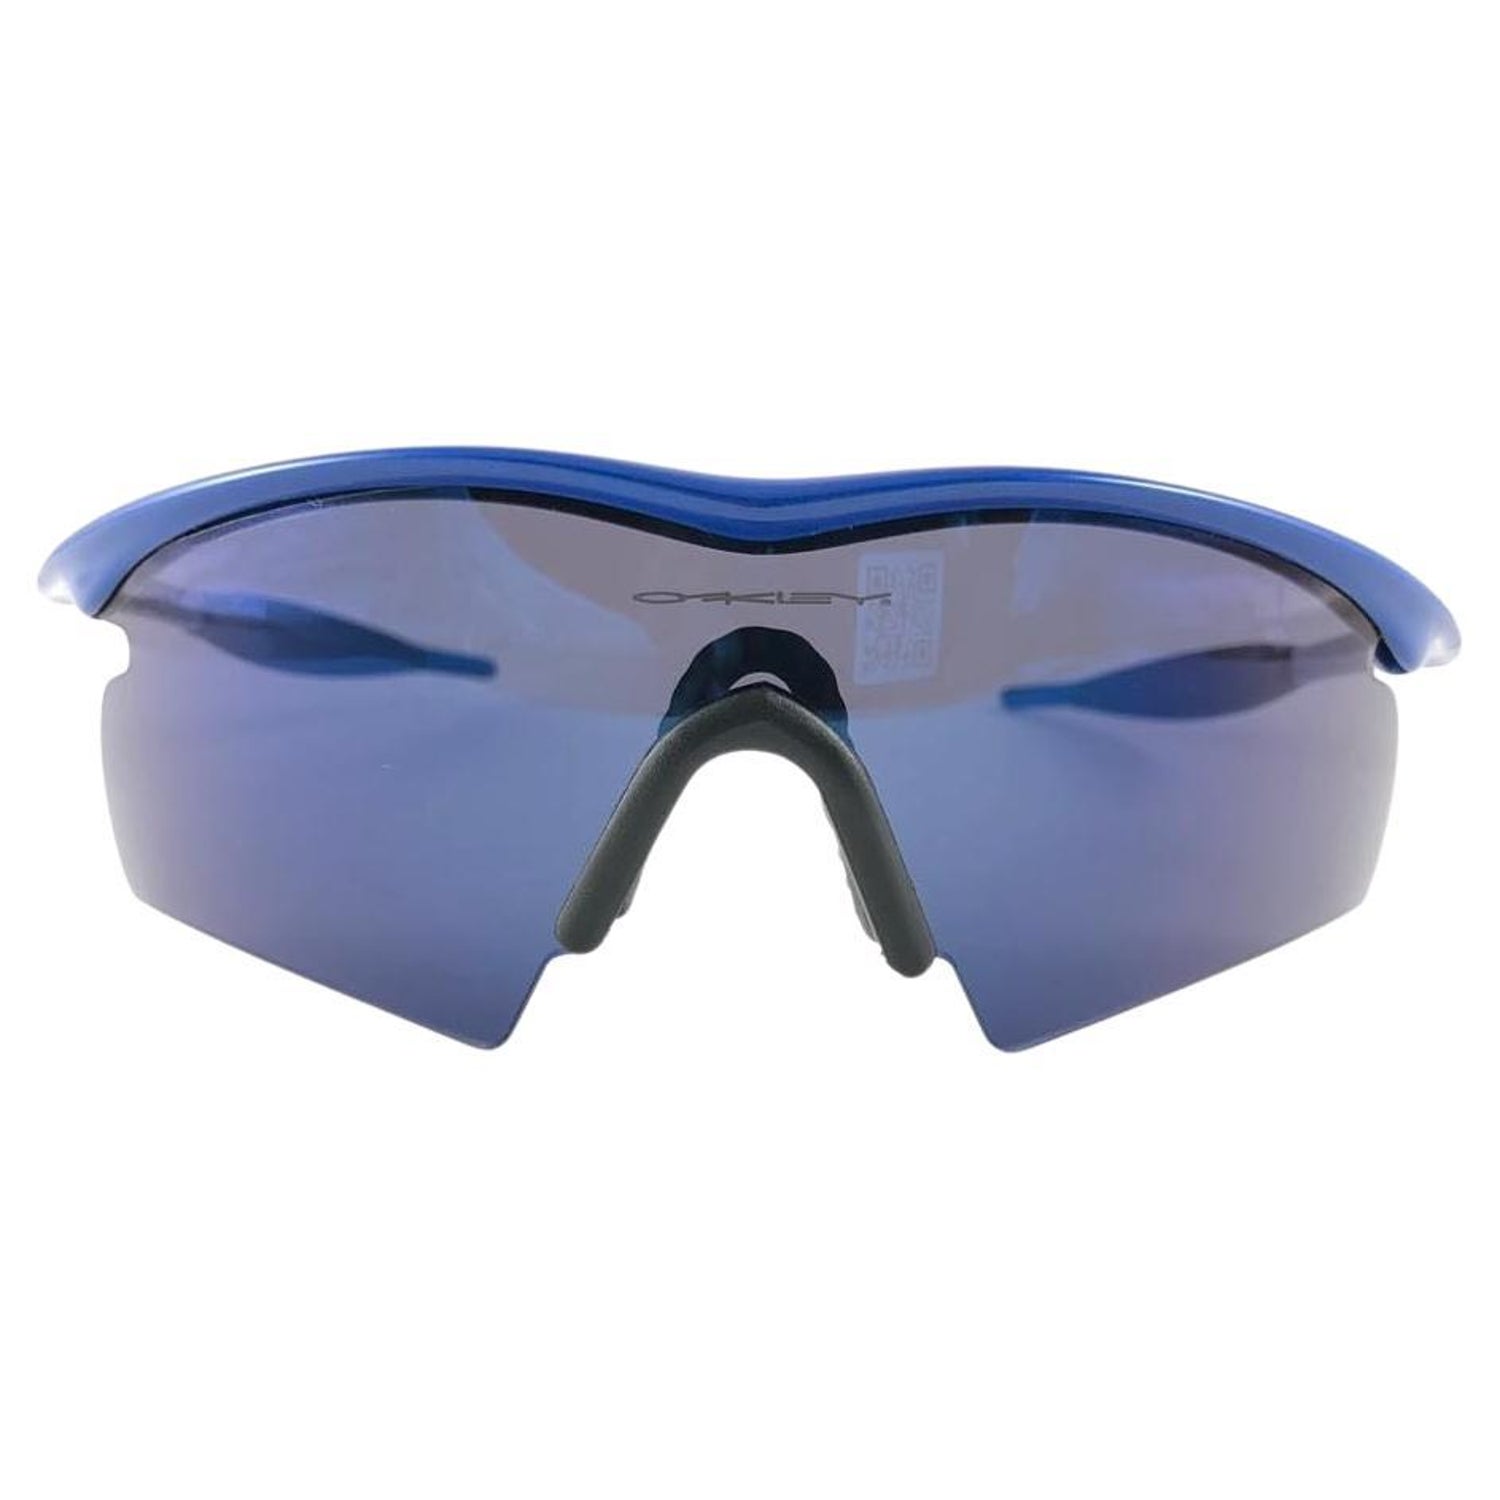 Louis Vuitton Millionaire Sunglasses Blue - For Sale on 1stDibs  blue lv  sunglasses, millionaire bag louis vuitton, blue louis vuitton shades